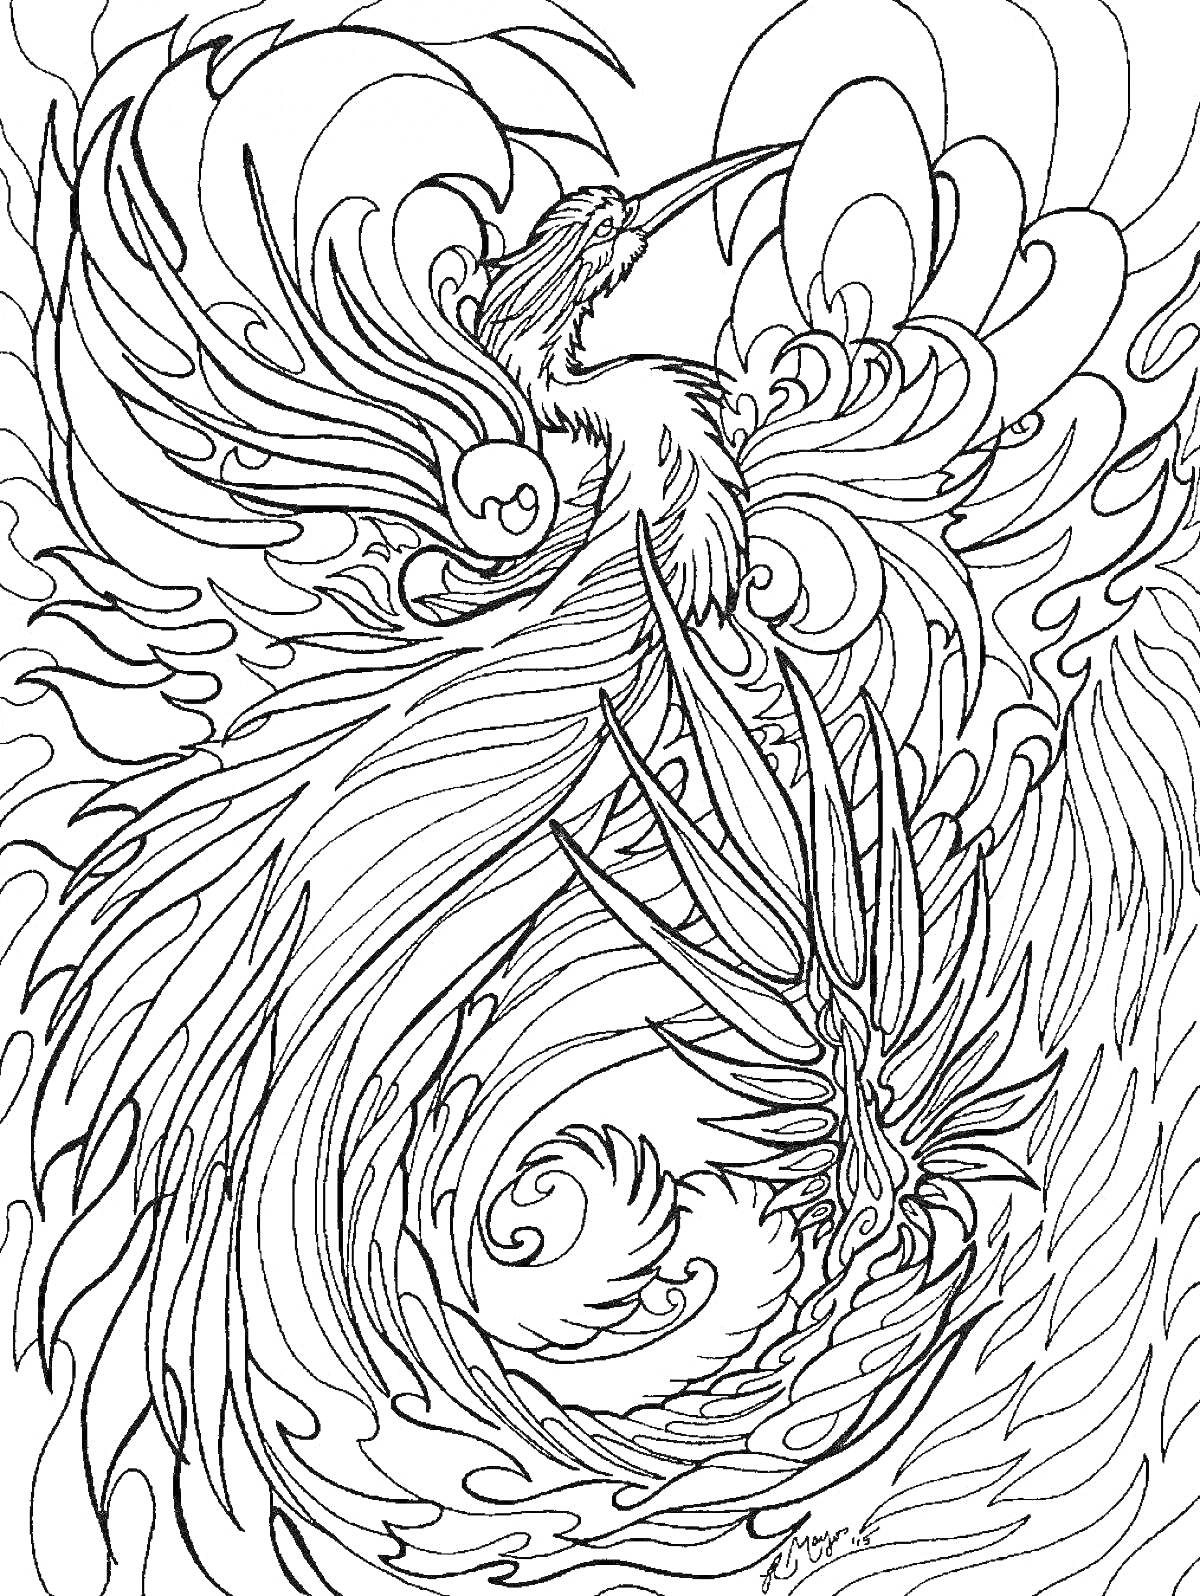 Раскраска Феникс во взмахе крыла, окруженный языками пламени и витиеватыми узорами